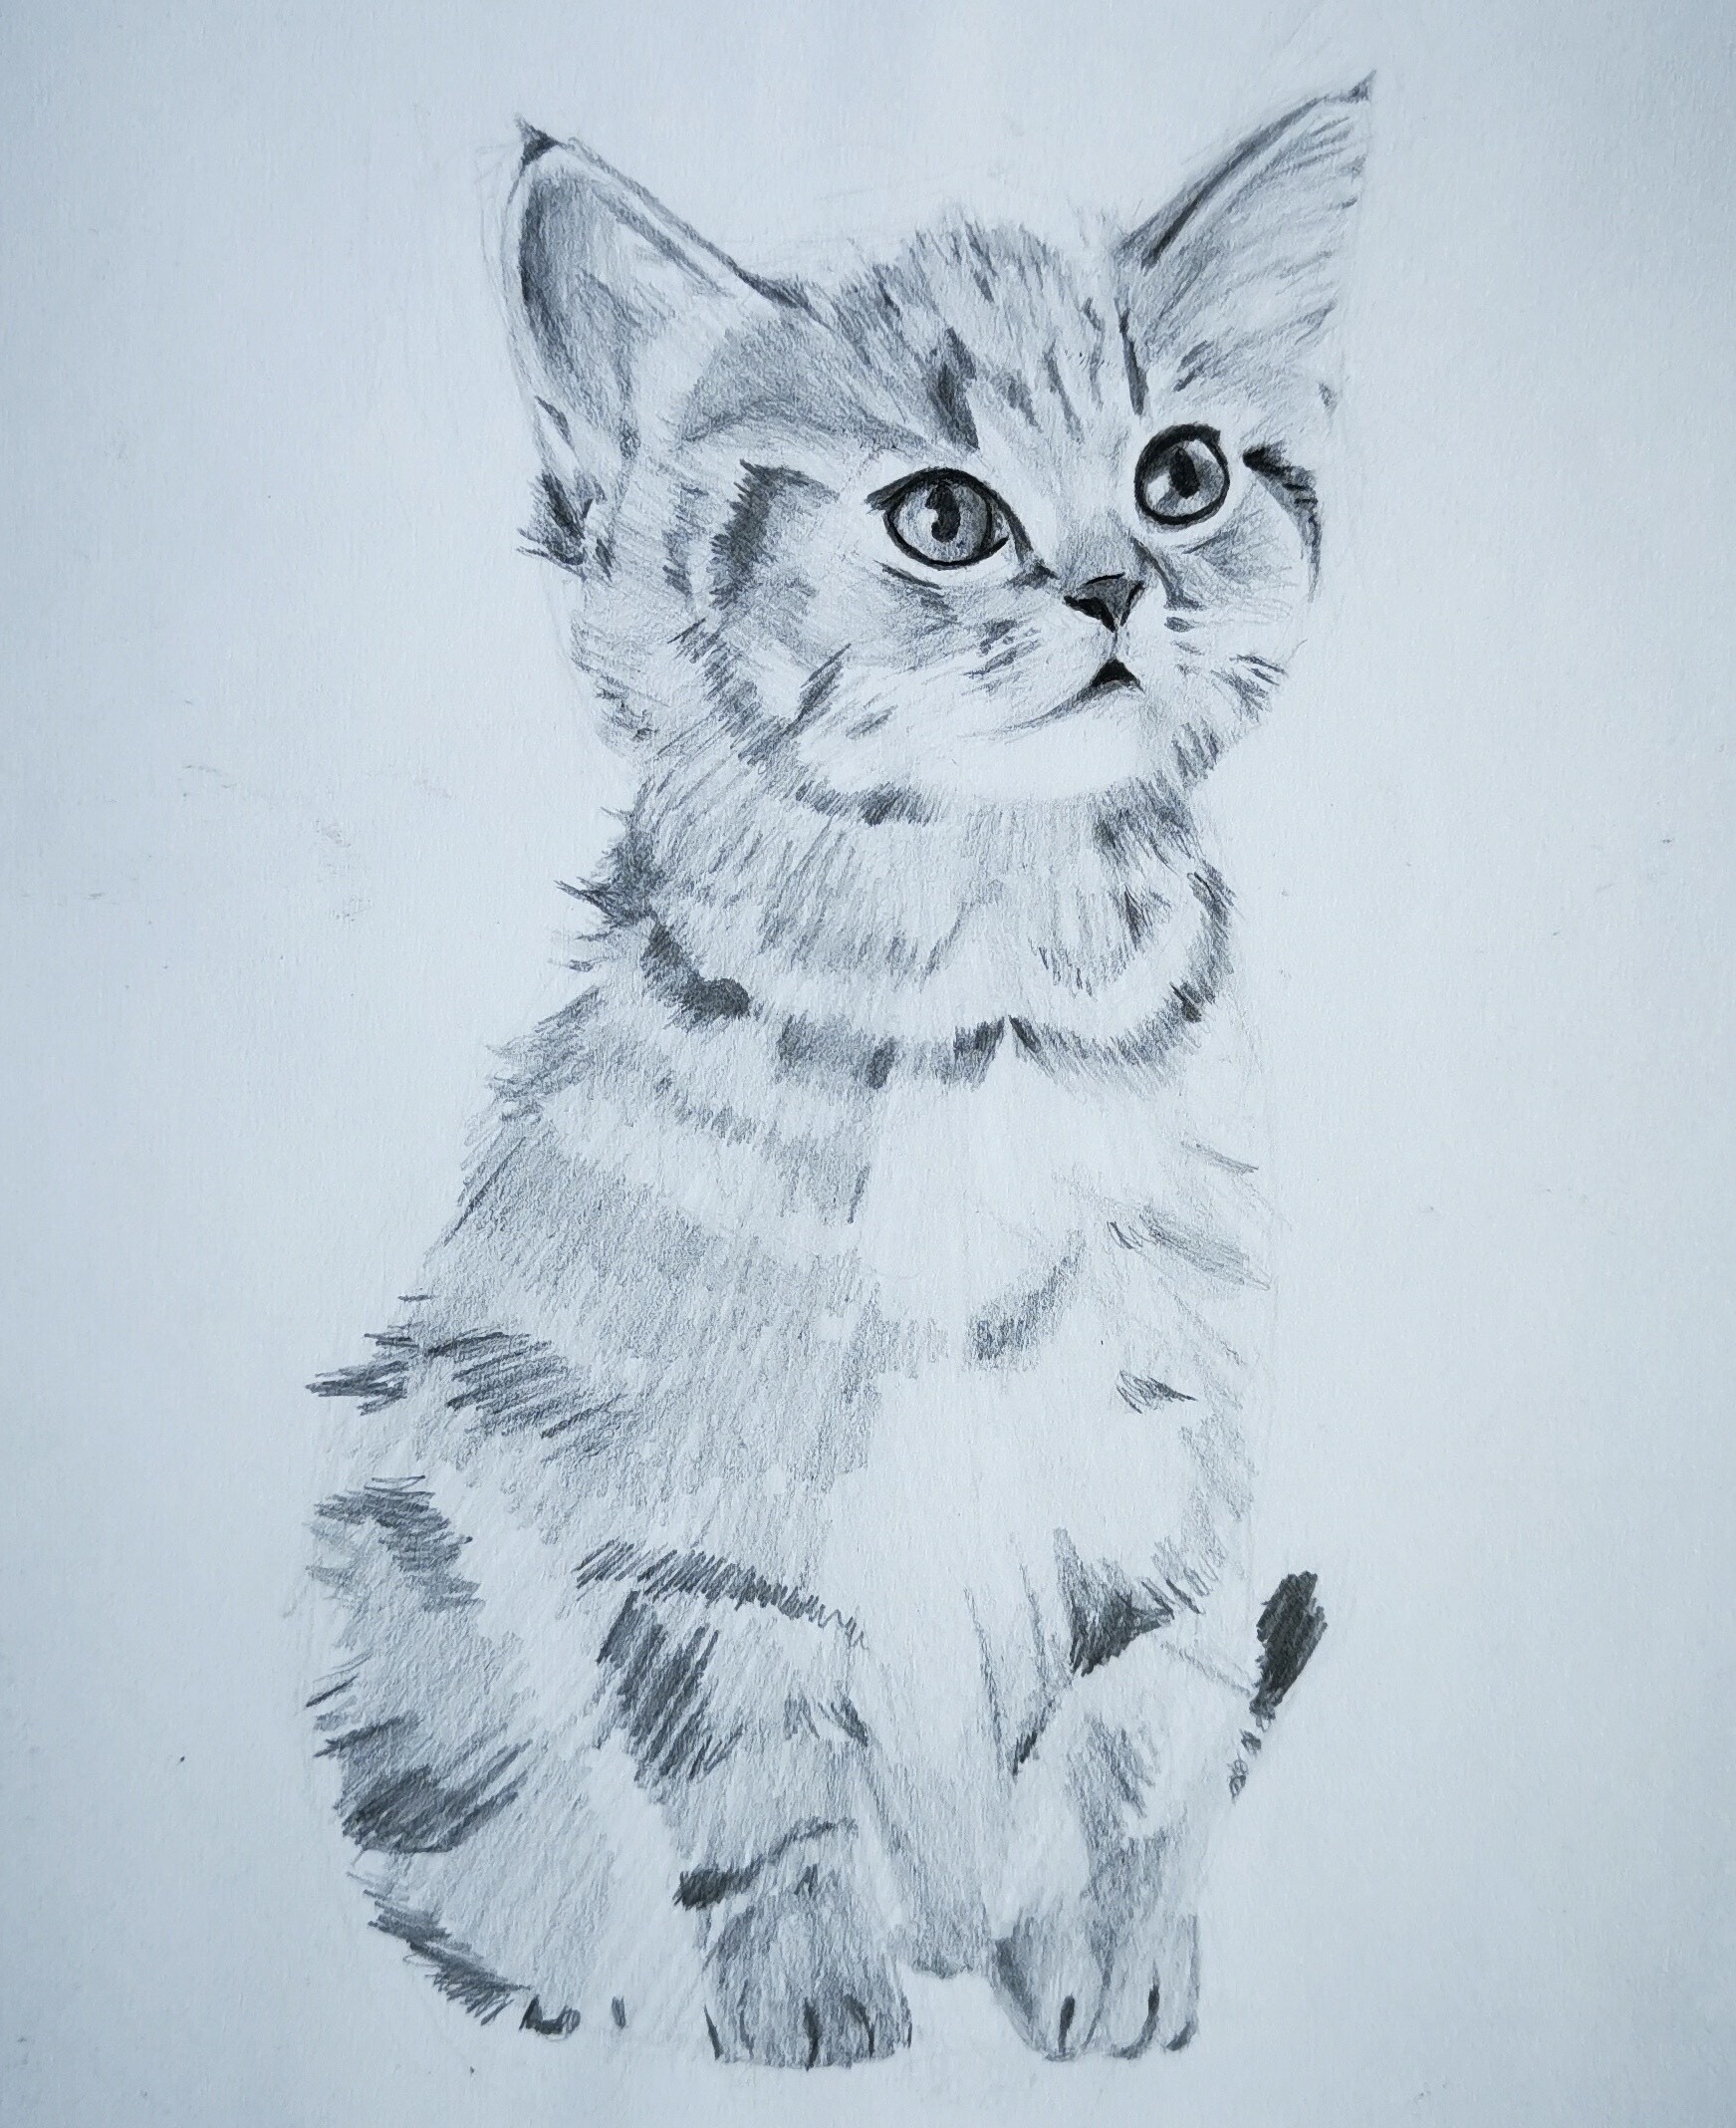 ArtStation - Kitten Sketch